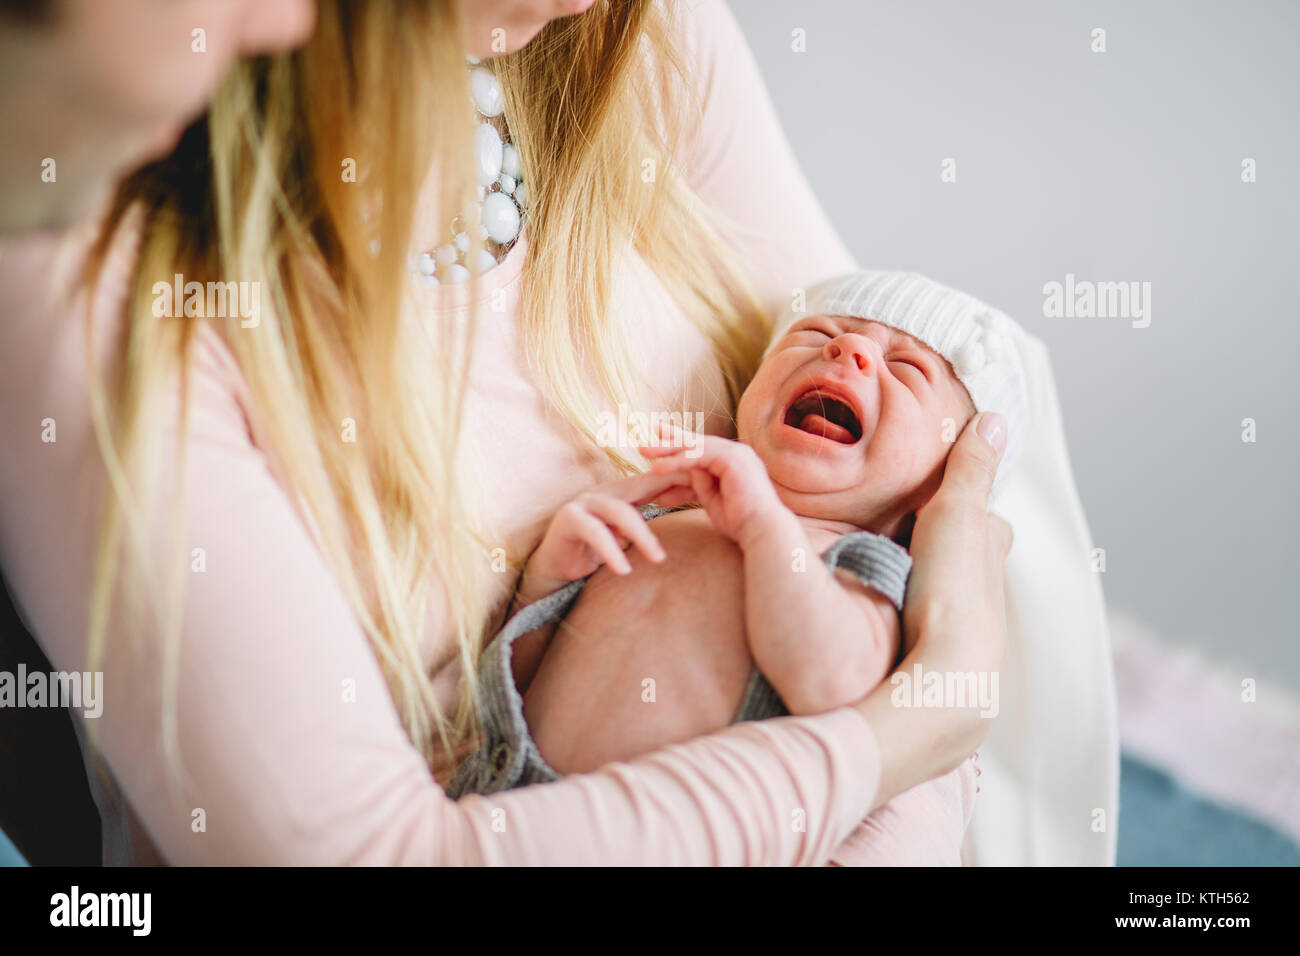 Кричит после кормления. Ребенок отказывается от груди. Отлучение от груди фото. Мама отлучила ребёнка от груди и он плачет. Младенец кричит после кормления.